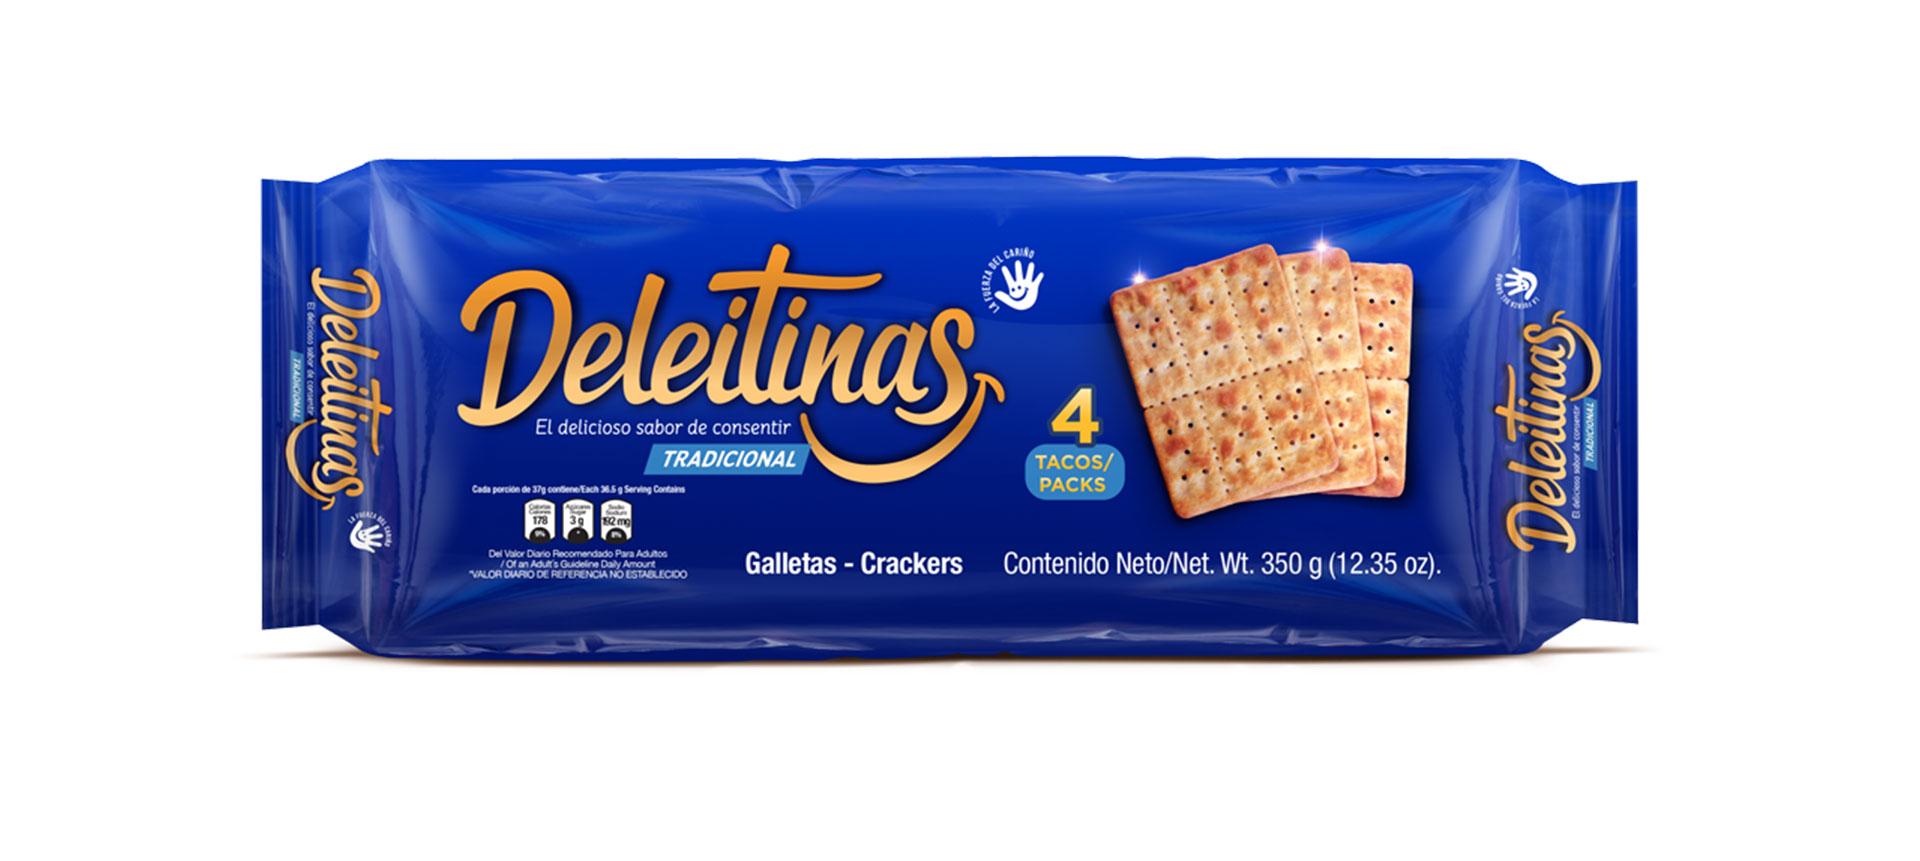 Deleitinas-packaging